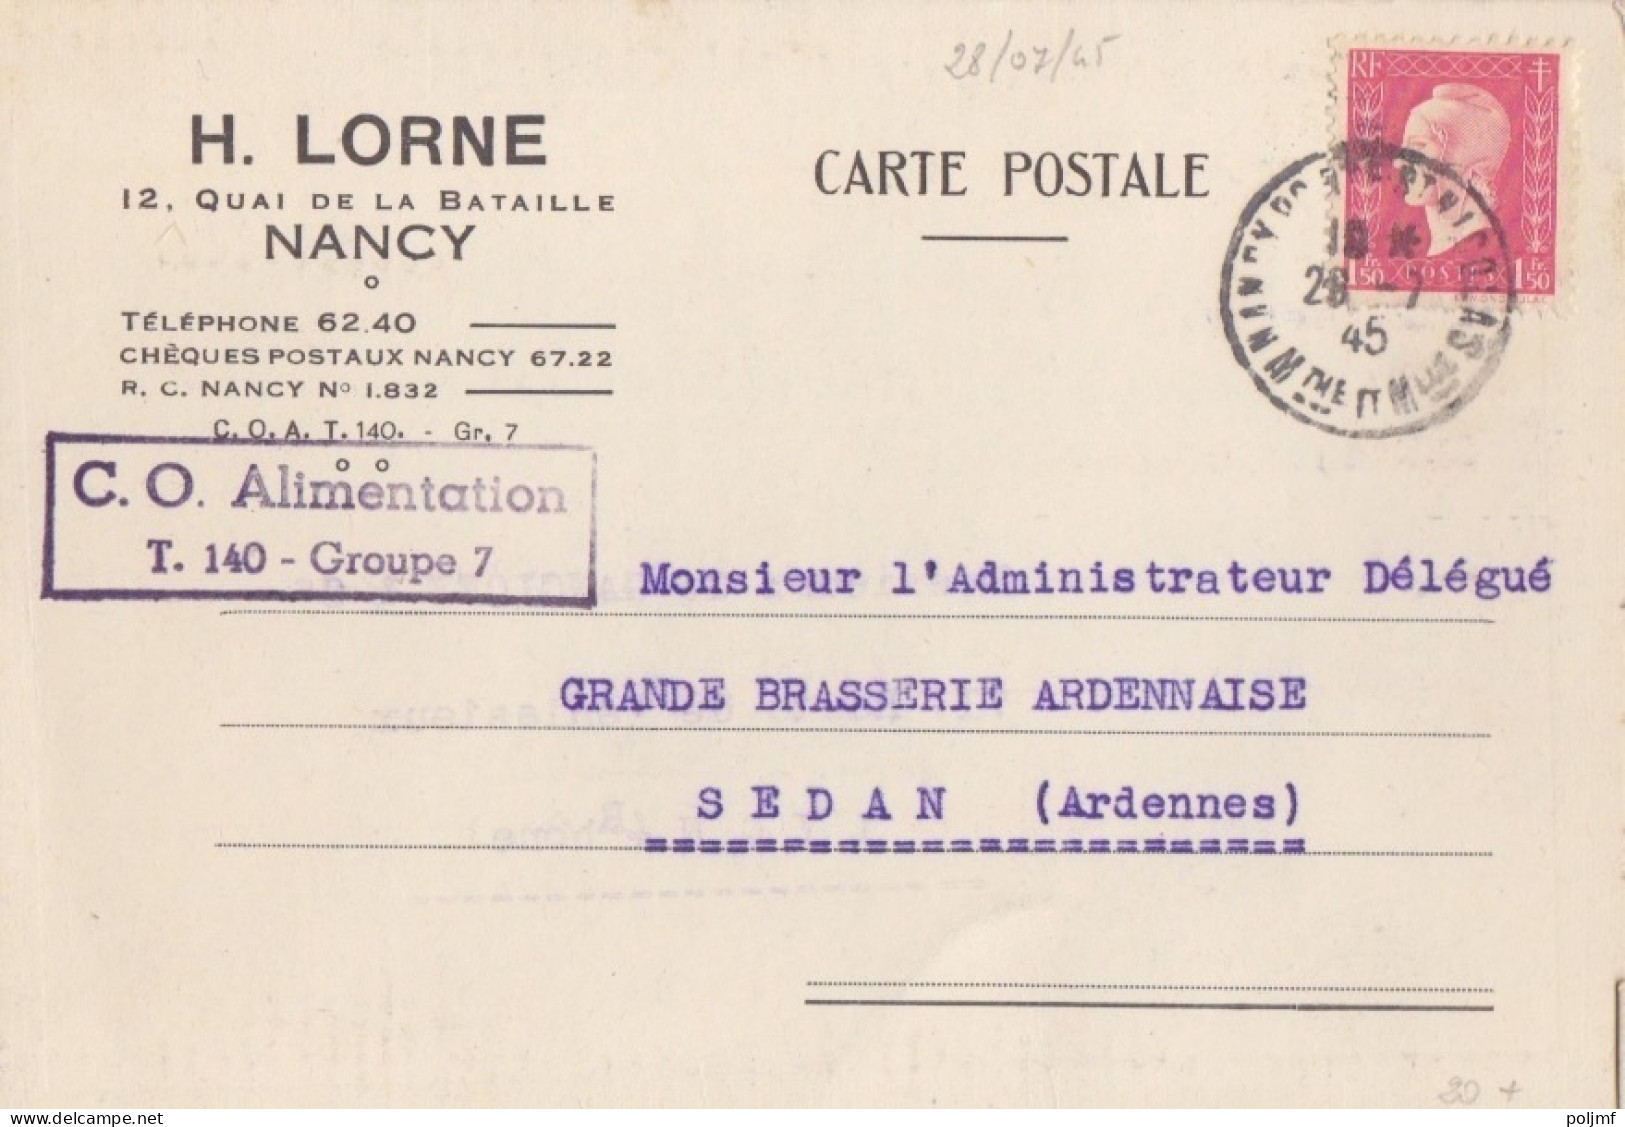 4 CP-Lettre (H. Lorne) Obl. Nancy Pte St Nicolas Du 28/7/45 Au 26/11/45 Sur 1f50 Dulac Rose N° 691 (Tarif Du 1/3/45) - 1944-45 Marianne De Dulac